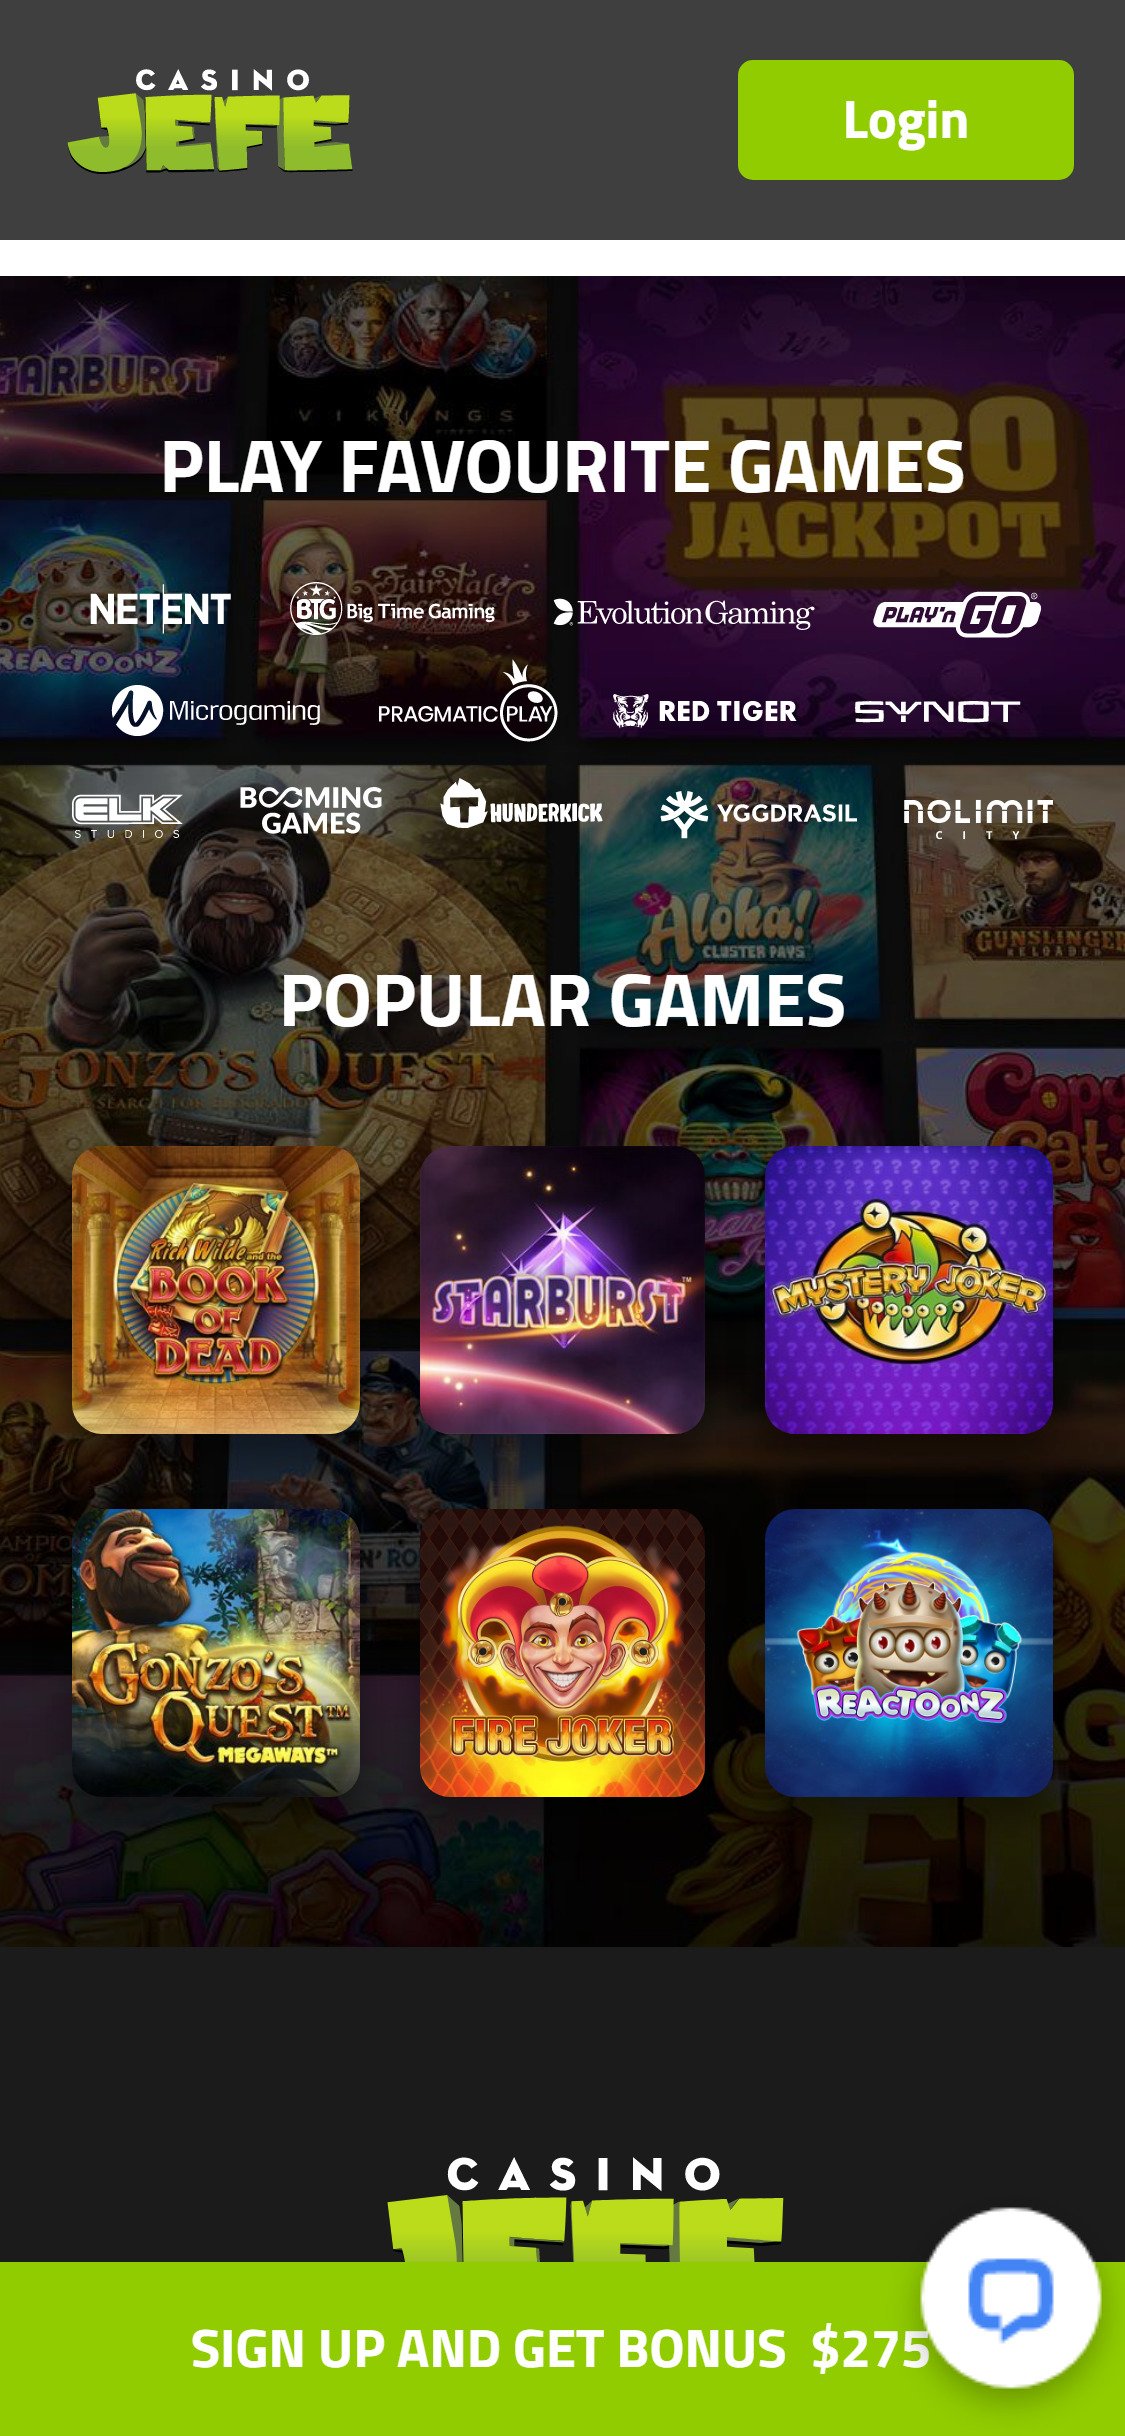 CasinoJefe Mobile Games Review